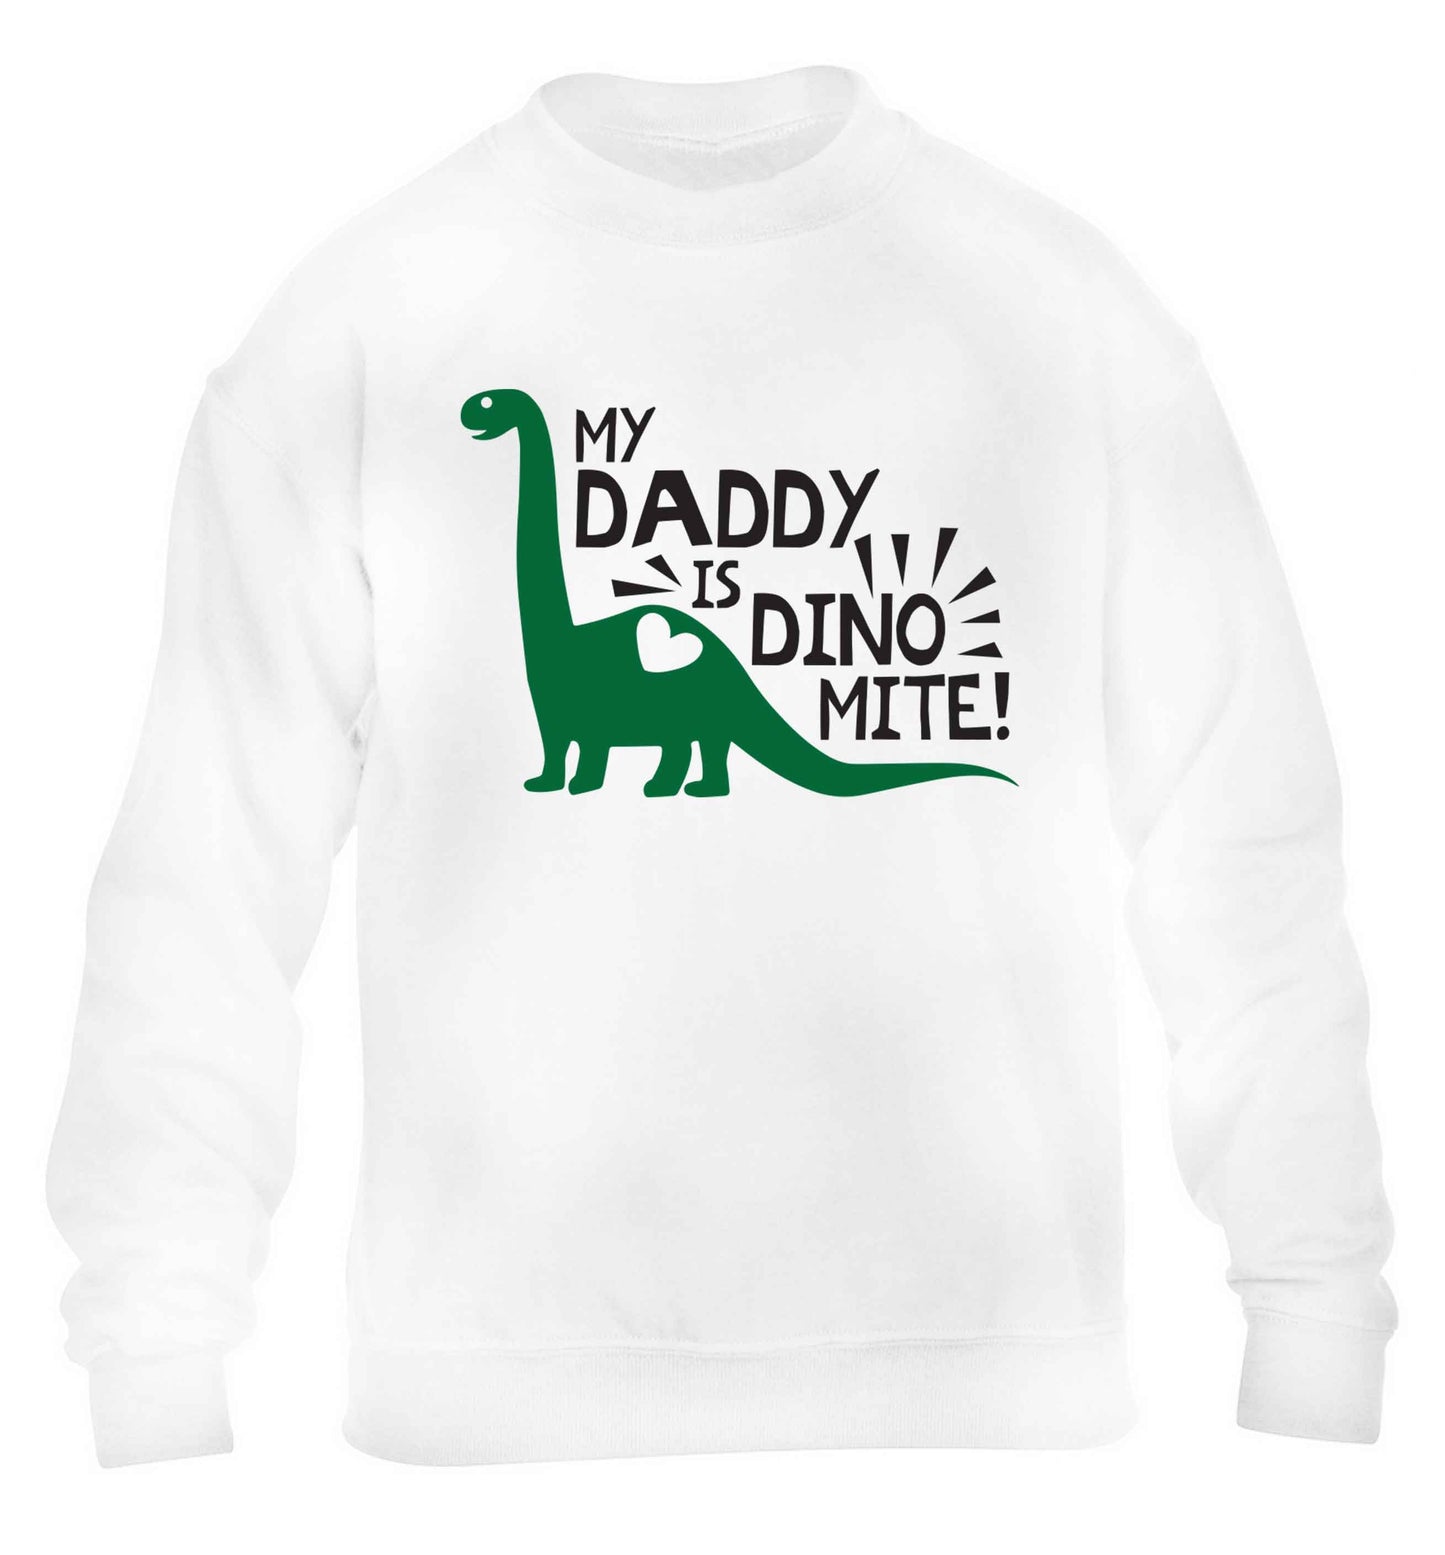 My daddy is dinomite! children's white sweater 12-13 Years